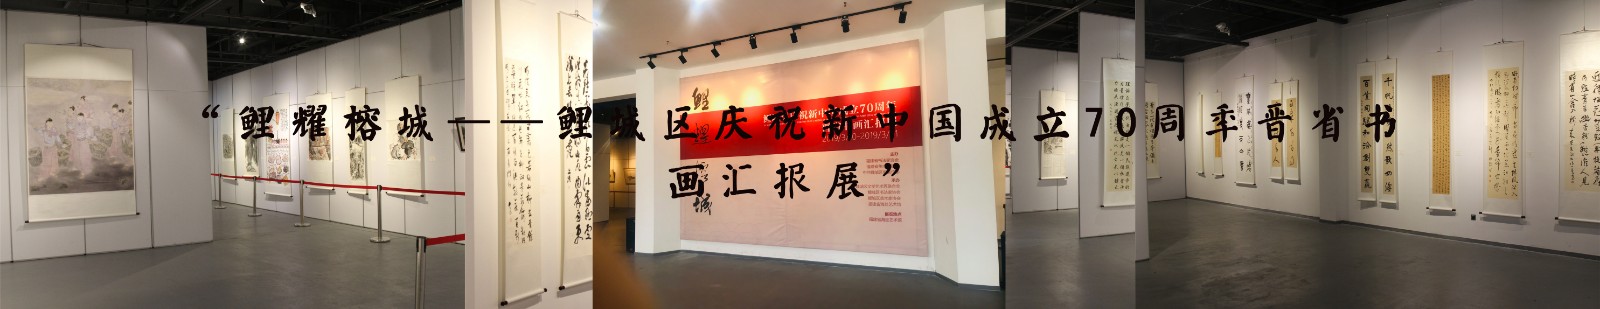 “鲤耀榕城——鲤城区庆祝新中国成立70周年晋省书画汇报展”